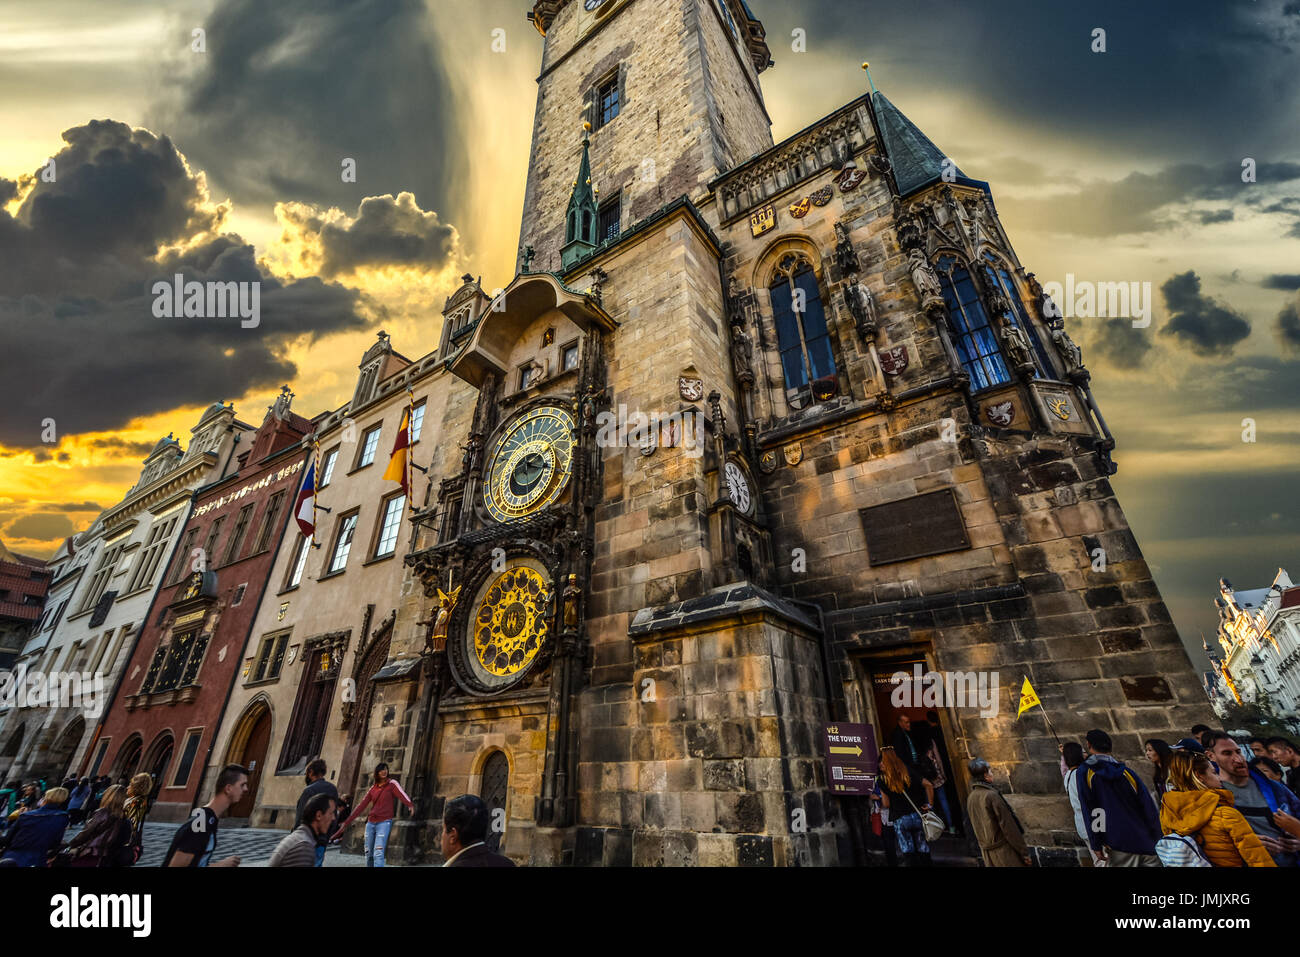 Die mittelalterliche astronomische Uhr in der Prager Altstadt an einem bewölkten Tag nach einem Sturm mit Wolken als der Tag zu Ende geht Stockfoto